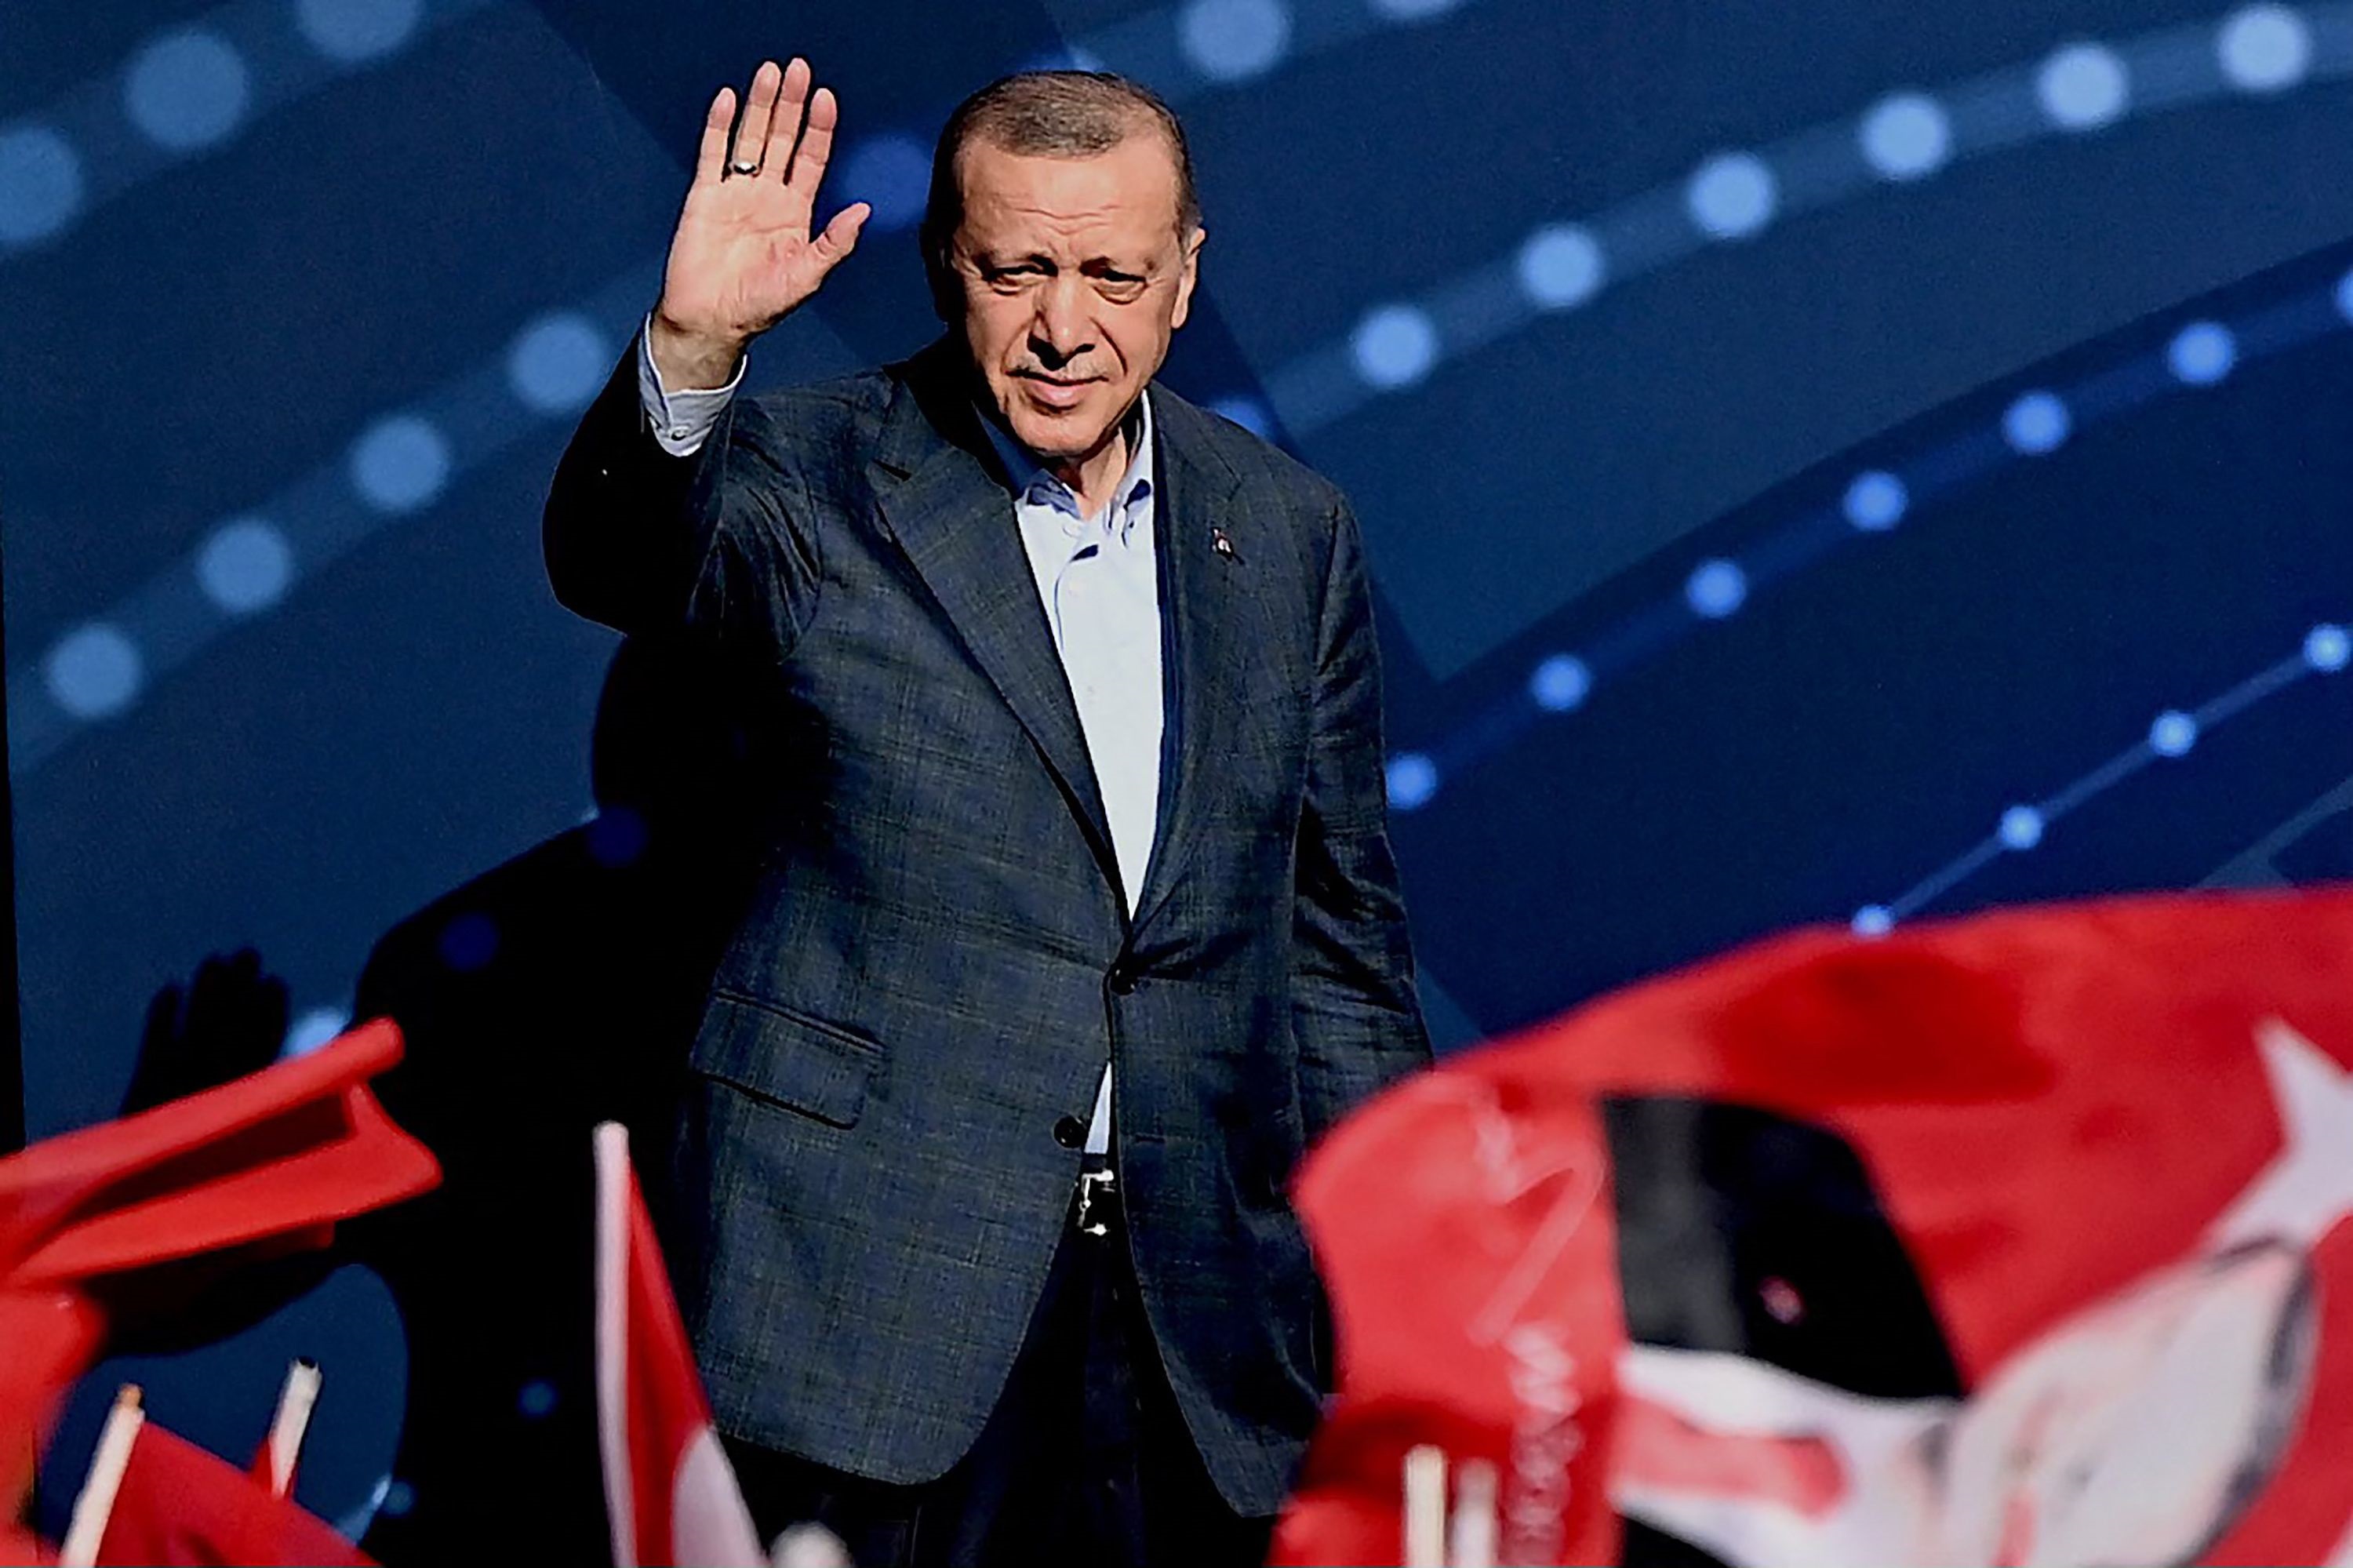 Tyrkias president Recep Tayyip Erdogan hilser tilhengere i Istanbul 15. juli 2022, under en markering av Tyrkias dag for "demokrati og nasjonal enhet".